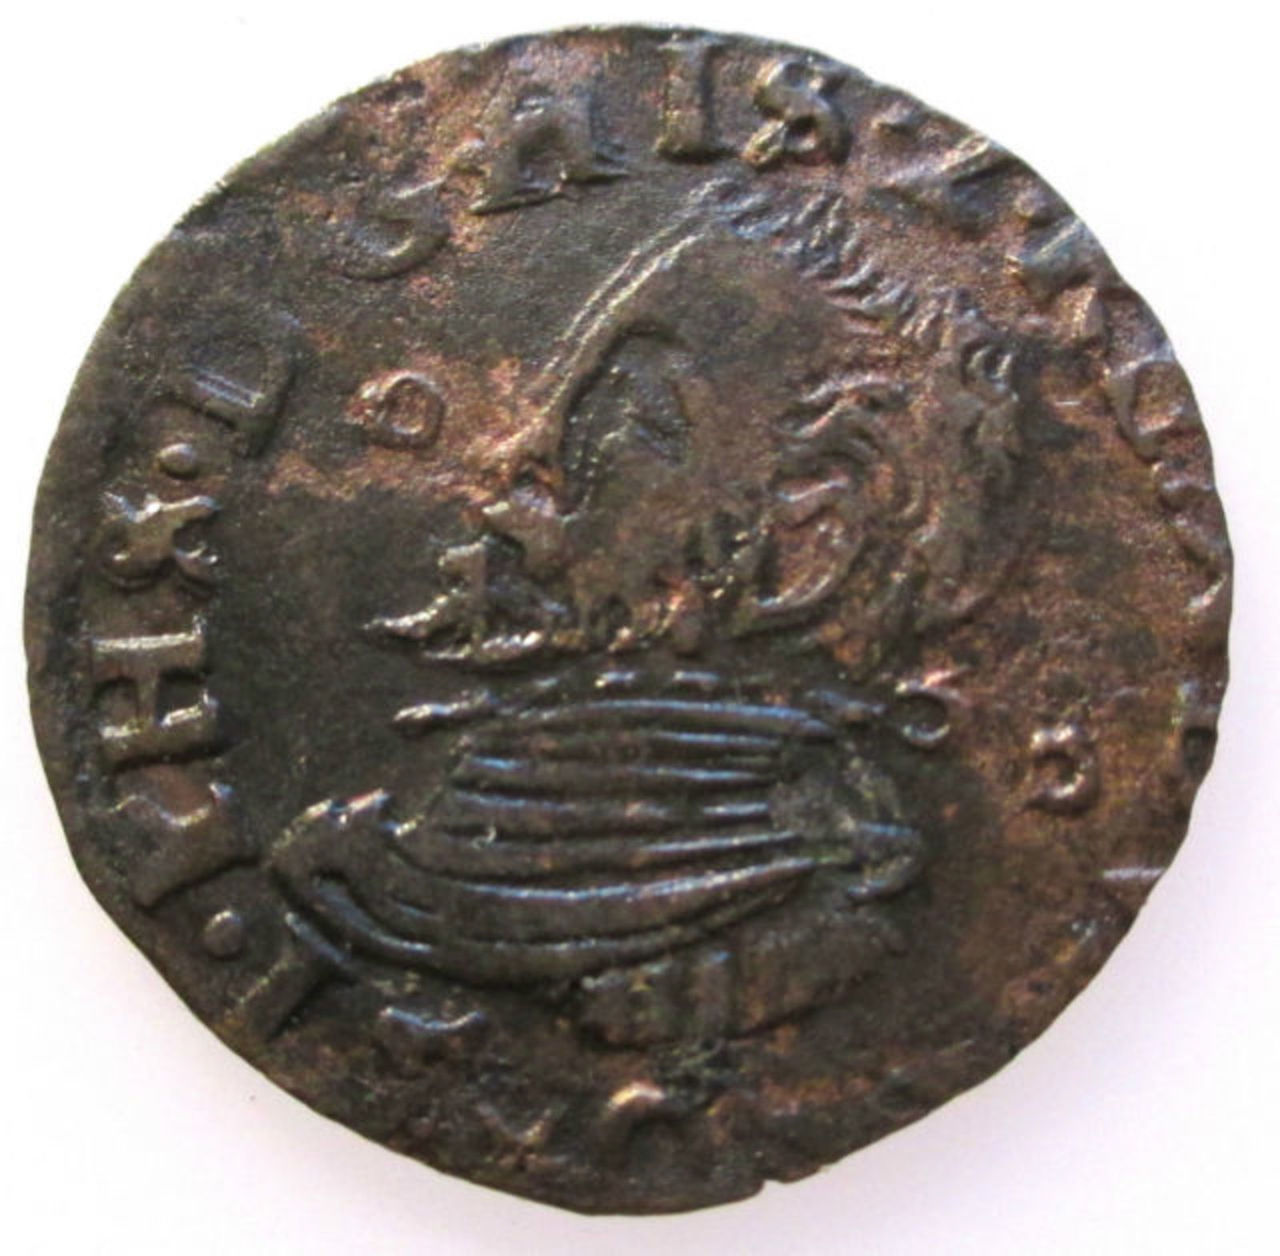 Monedas acuñadas en los Paises Bajos a nombre de Felipe II - Página 5 Spanish_Netherlands_Duit_Gigot_Maastricht_Philip